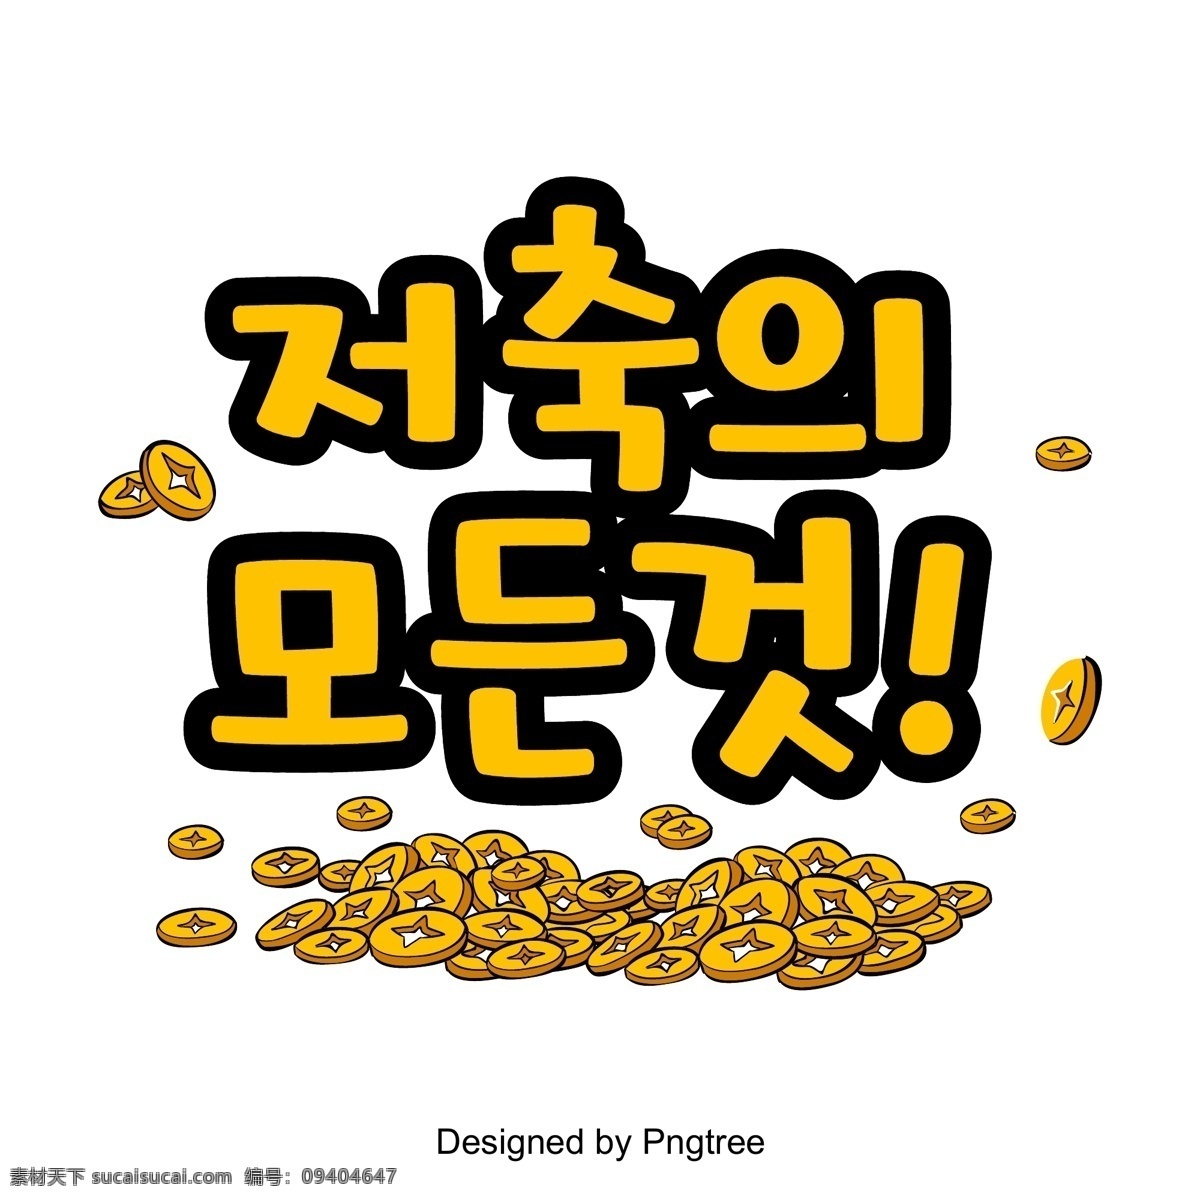 黄色 纯金 韩语 因为 所有 场景 金龙 金黄 音响 储蓄 现场 韩国人